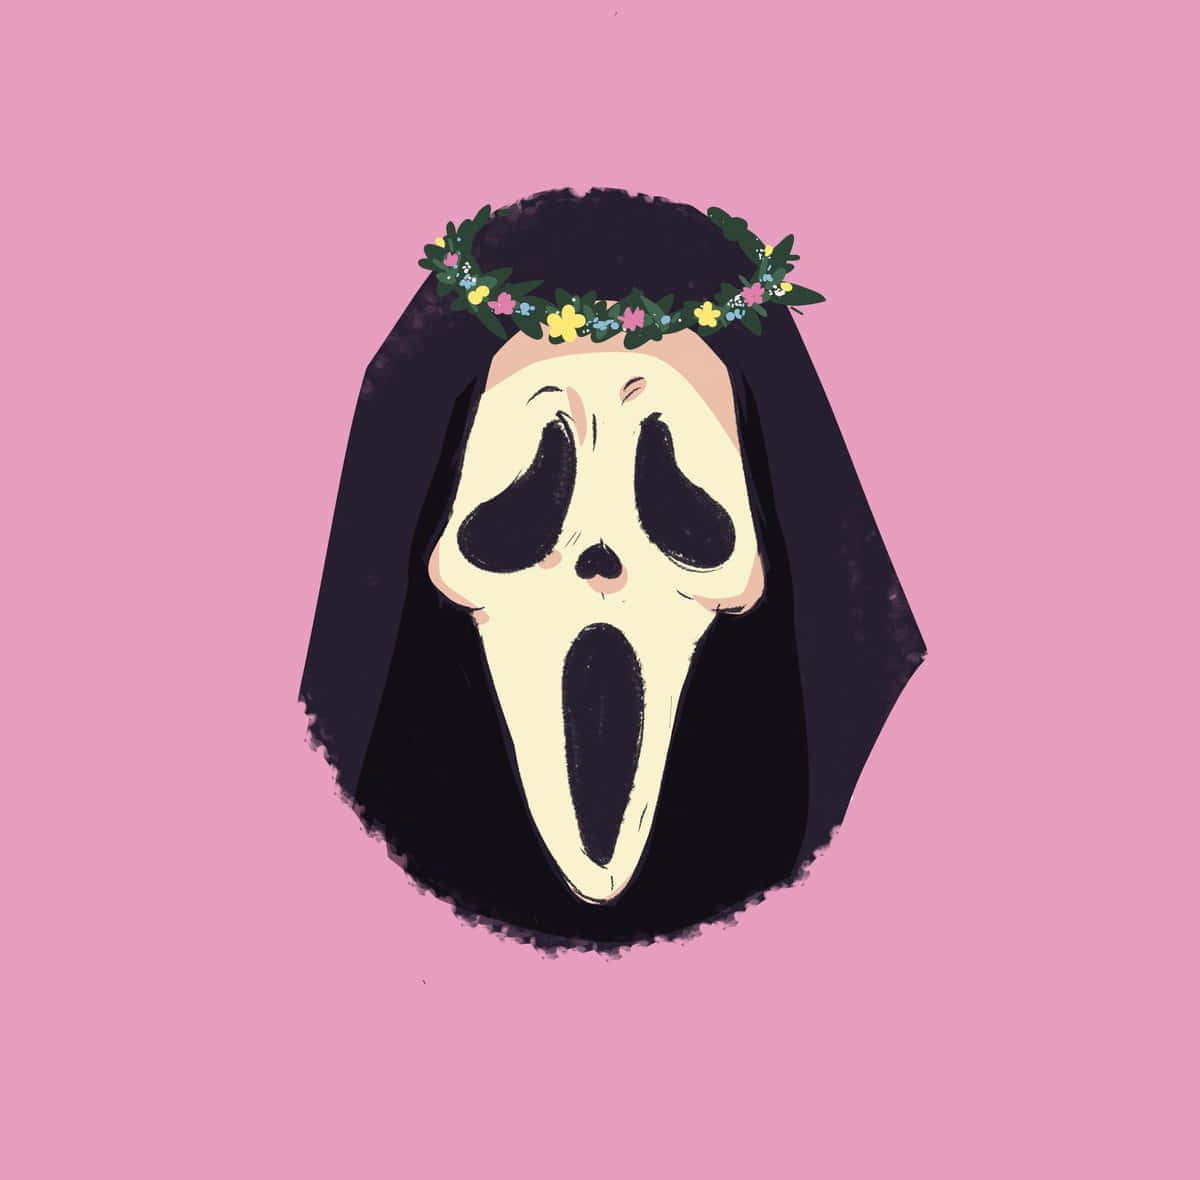 Floral Crowned Scream Mask Illustration Wallpaper